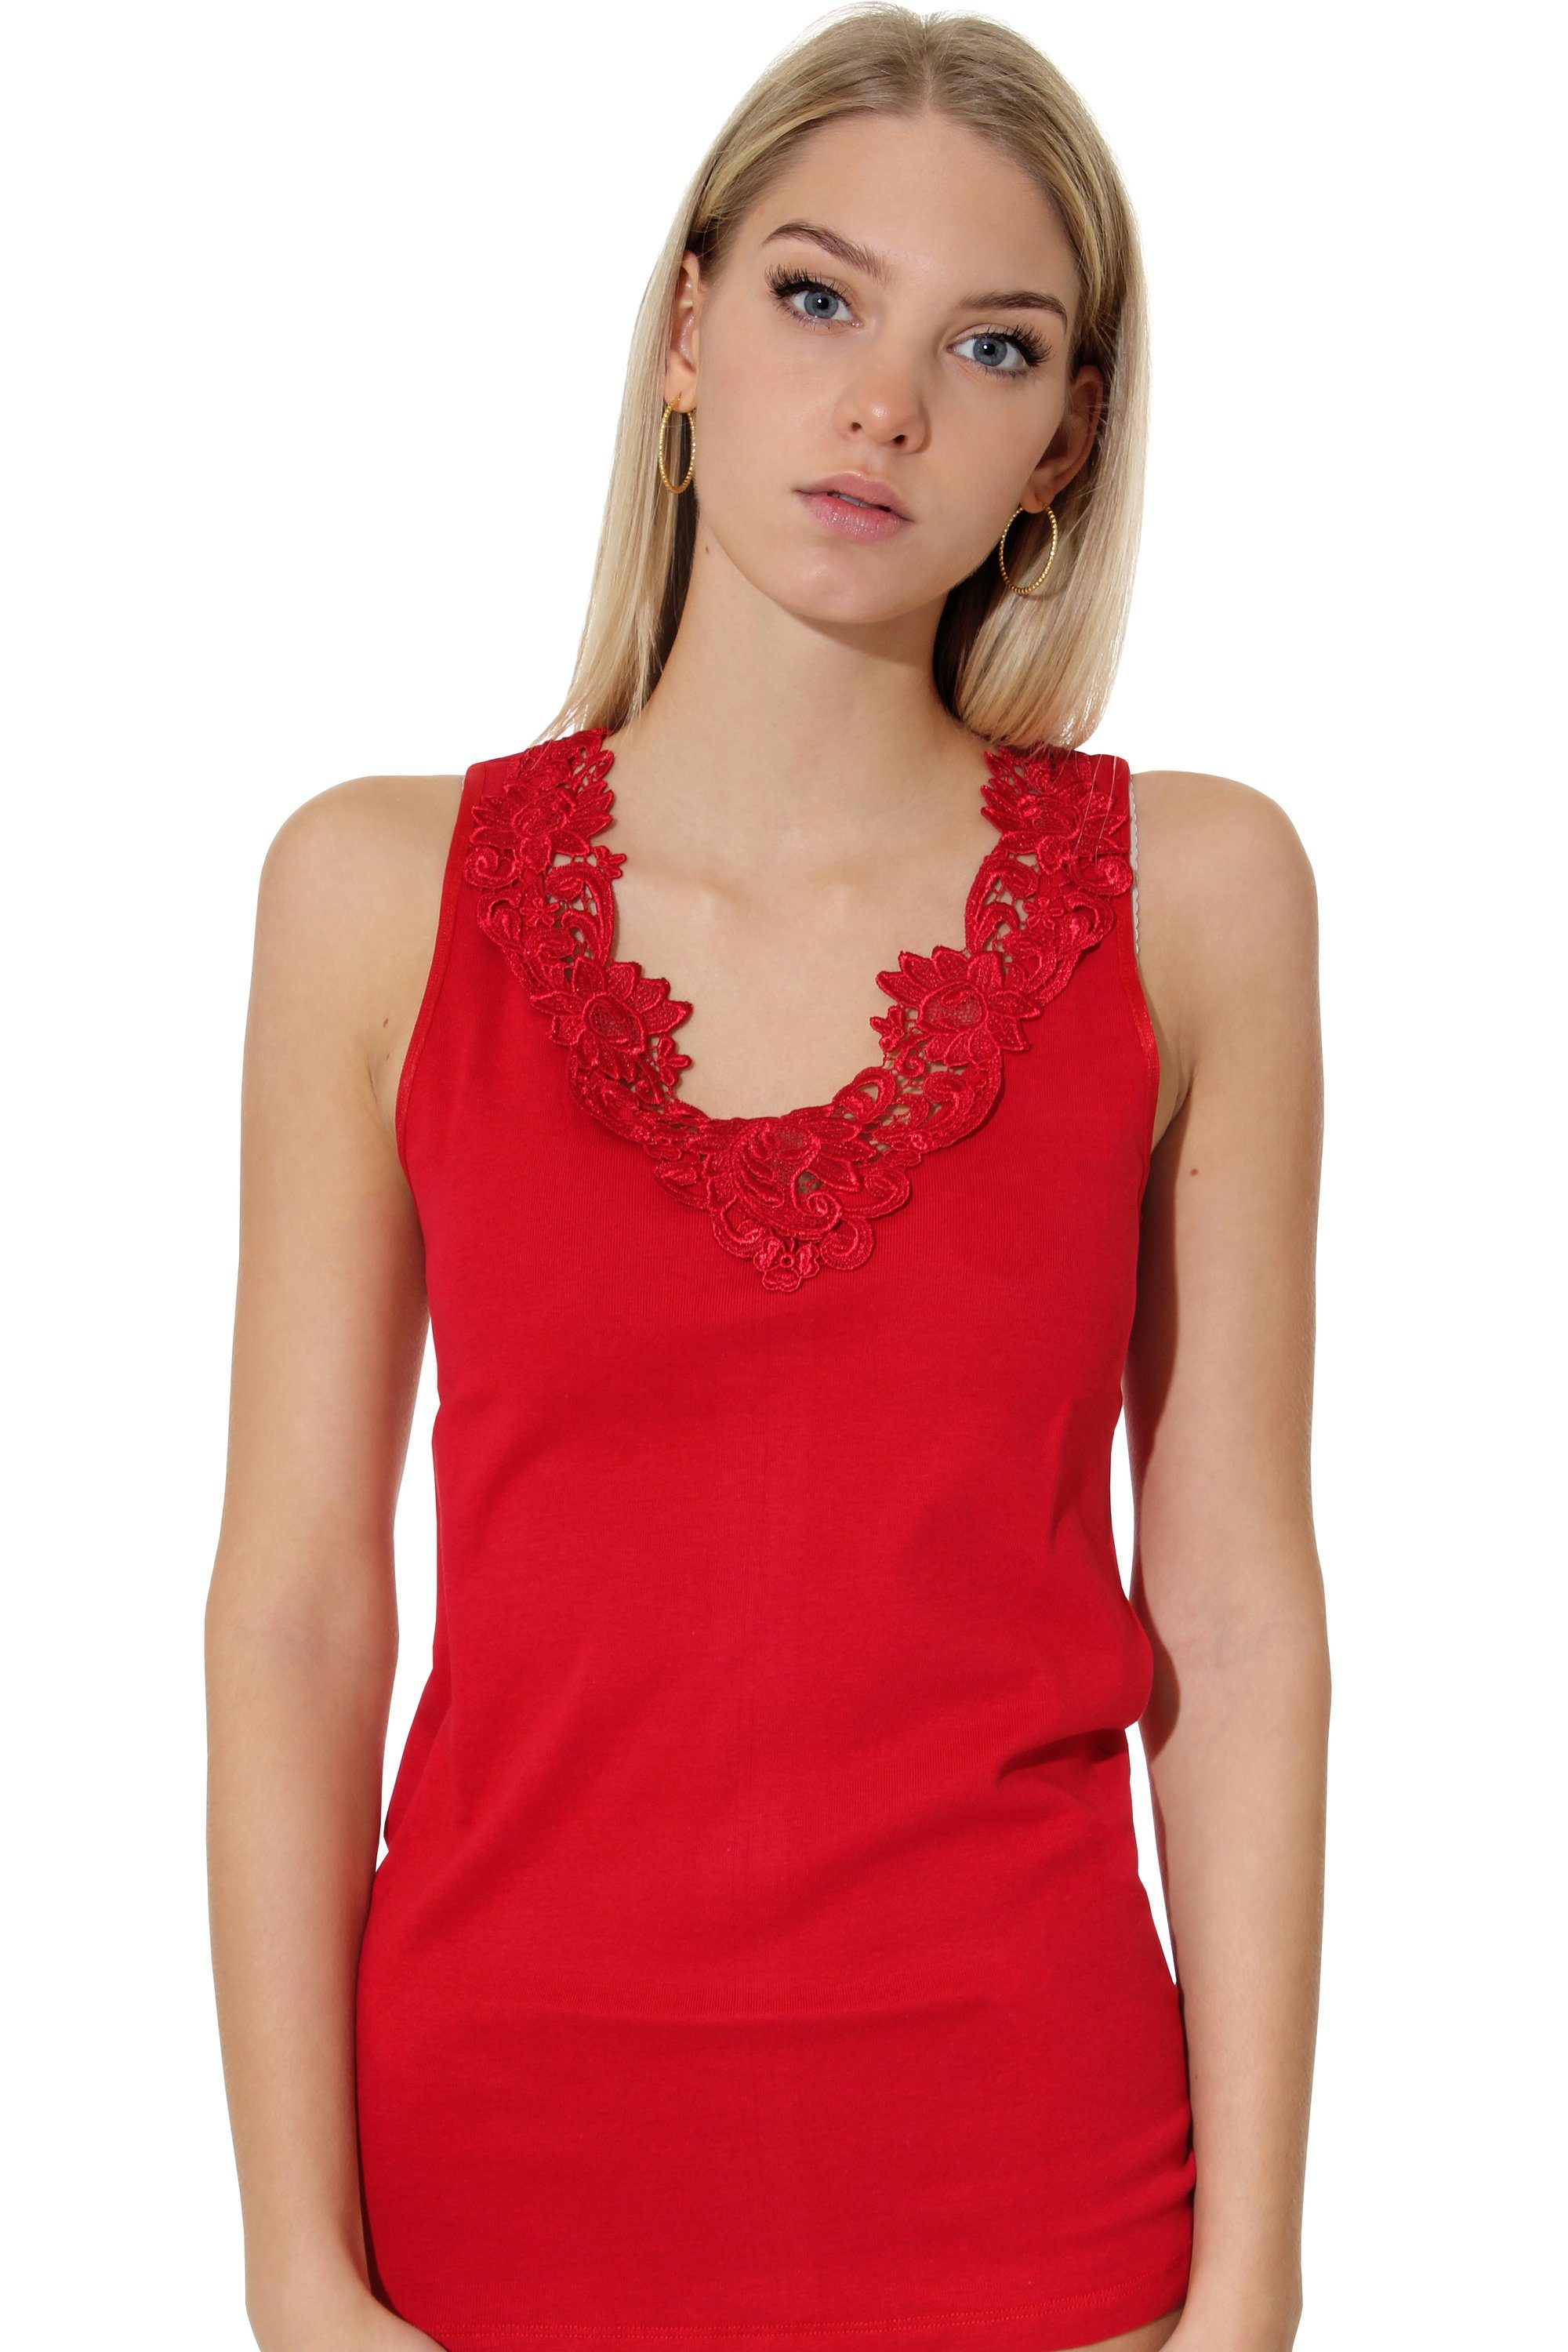 Cotton in mit rot angenehmer Baumwollqualität Unterhemd Prime® Spitze